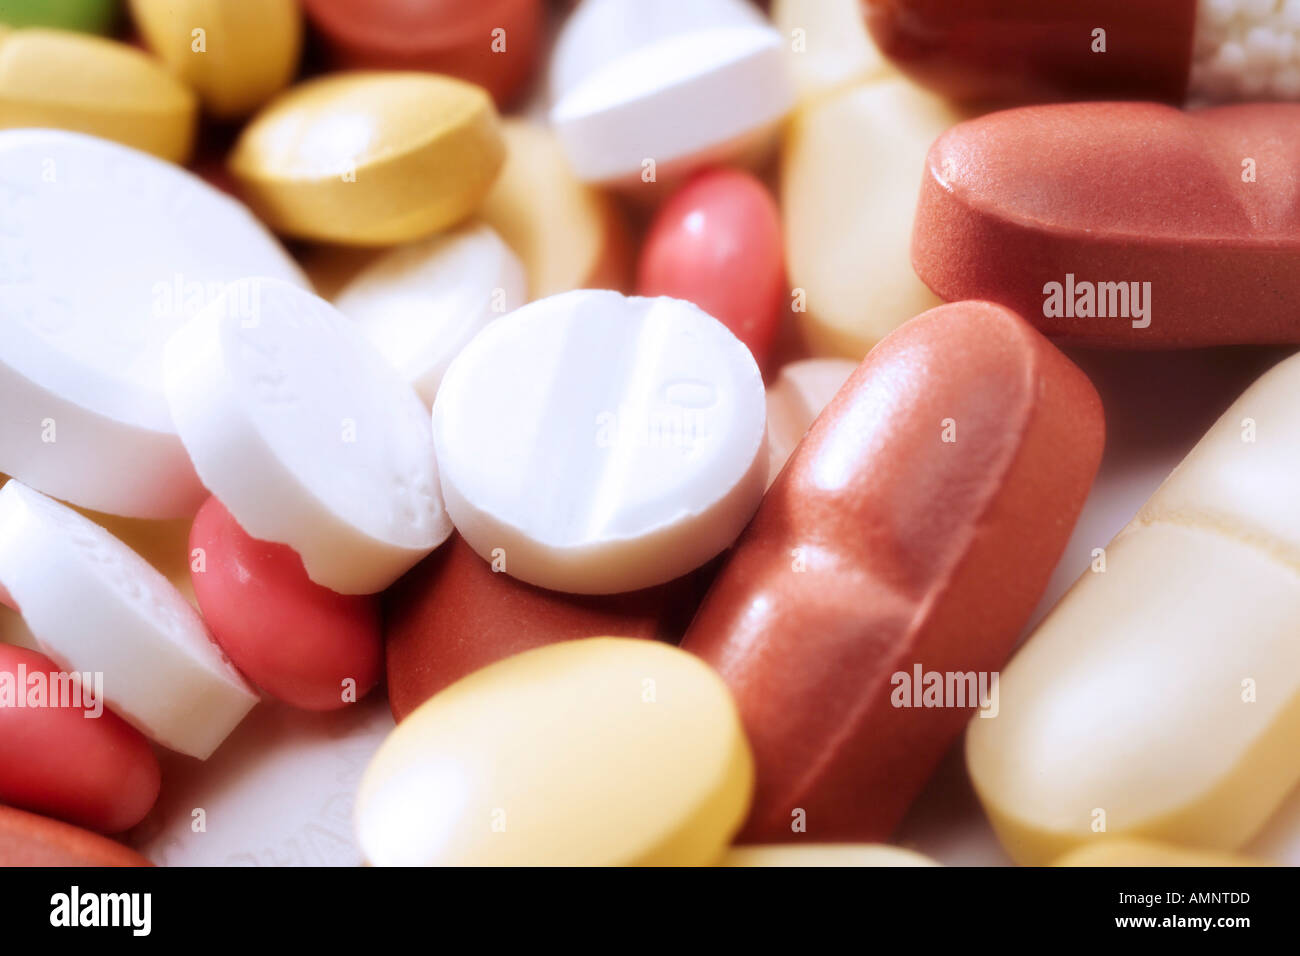 Various pills, close-up Stock Photo